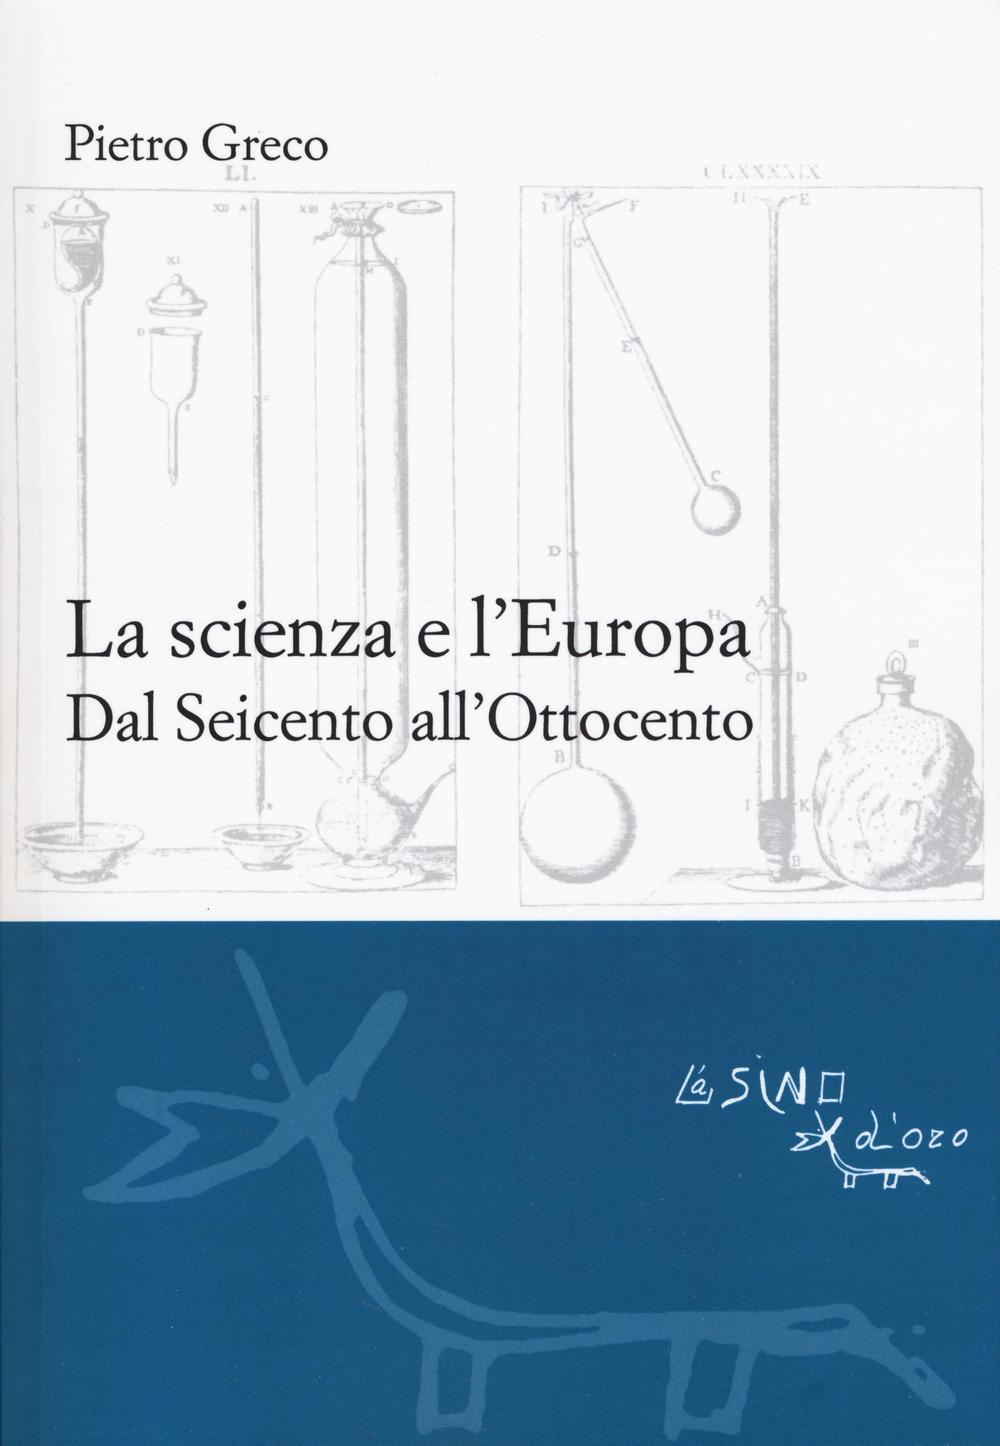 La scienza e l'Europa. Dal Seicento all'Ottocento